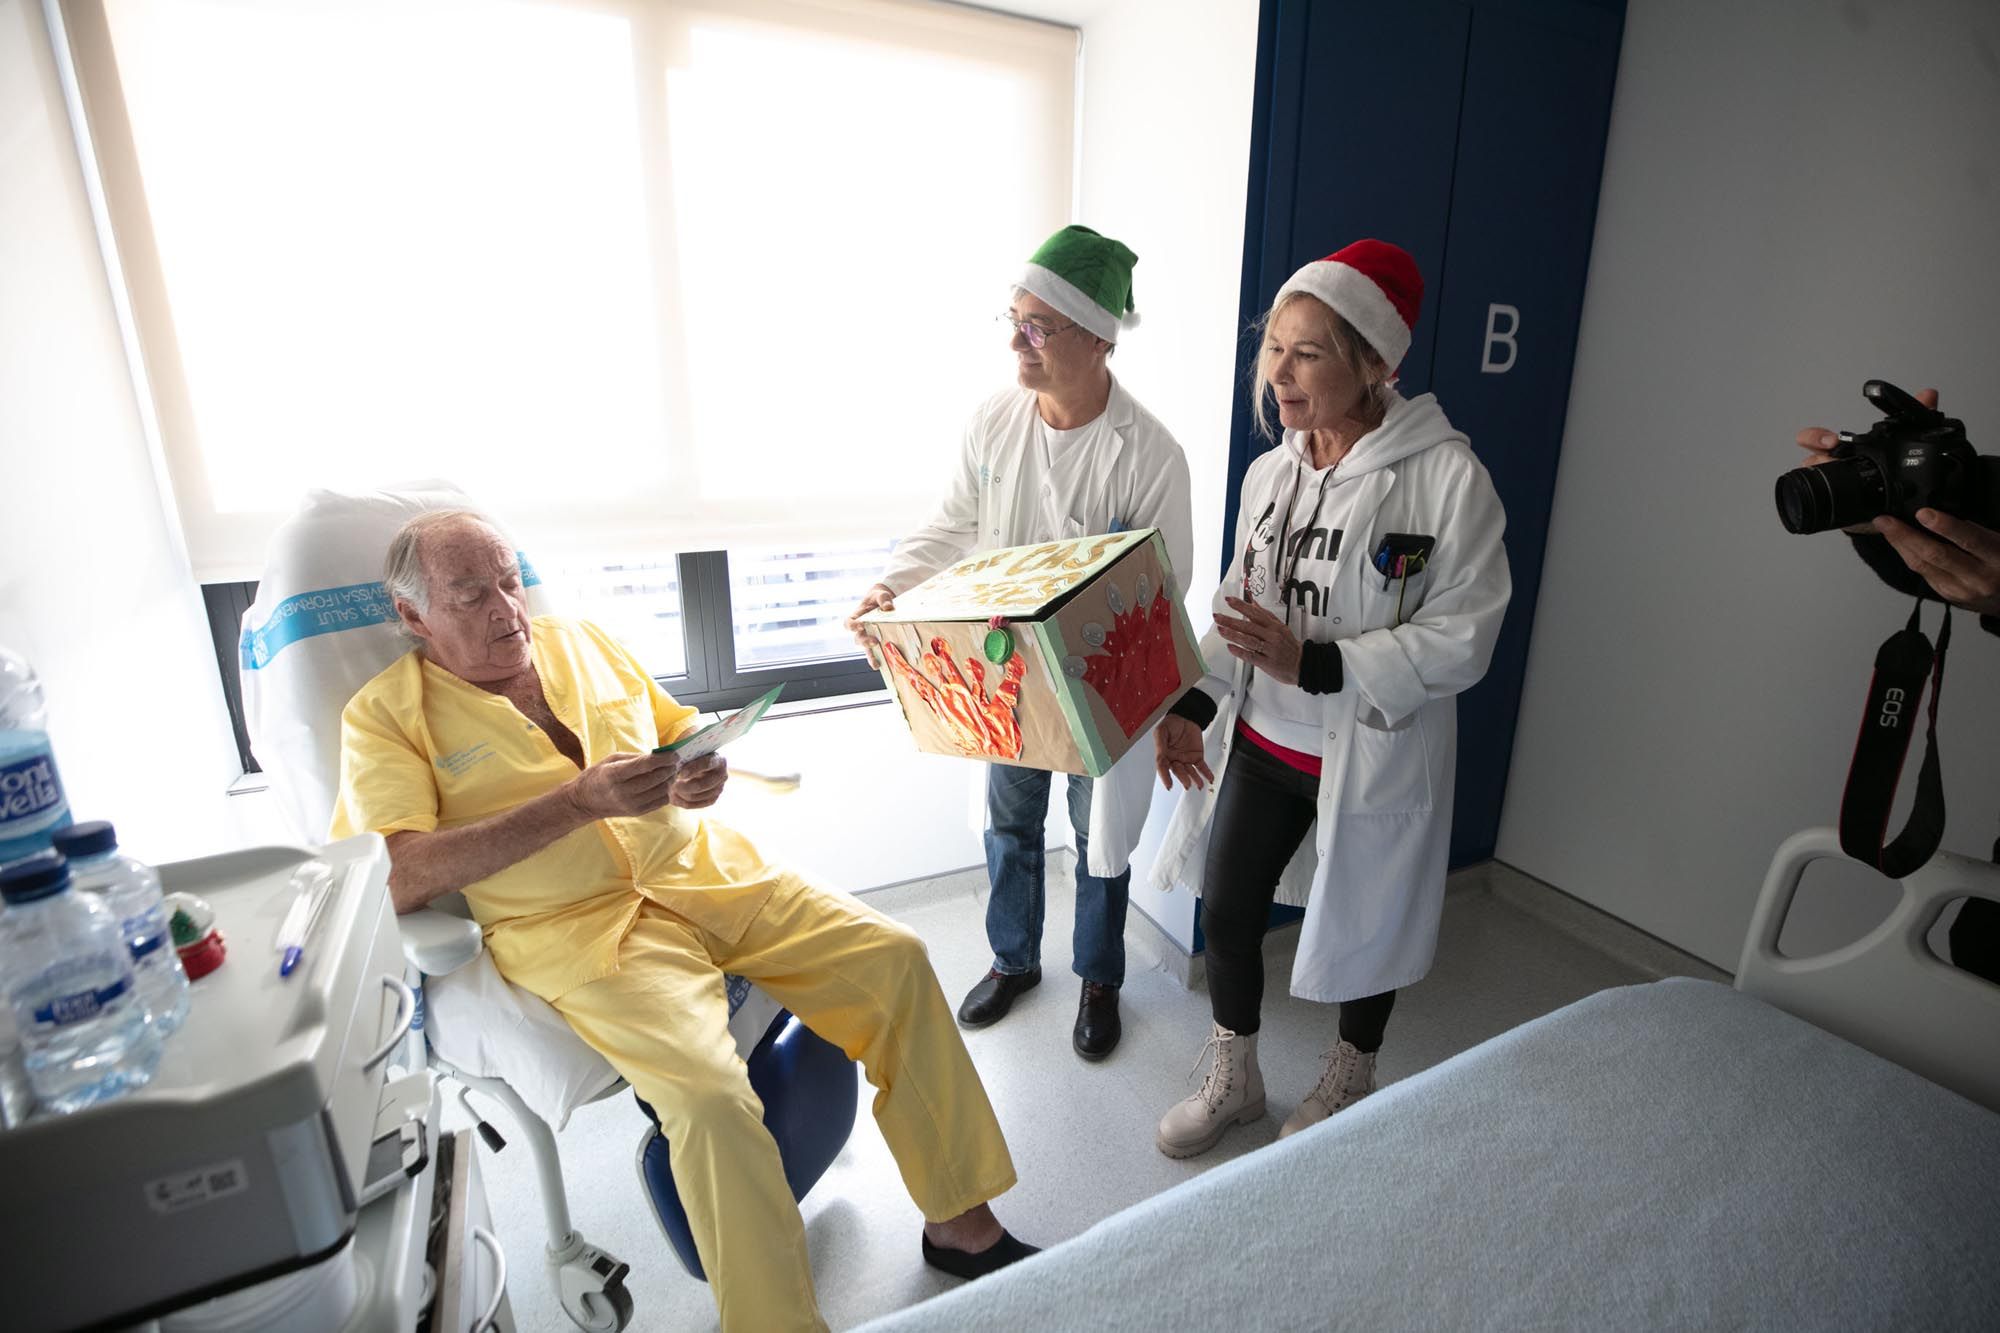 Las postales navideñas de los alumnos de Cas Serres llegan un año más al Hospital Can Misses